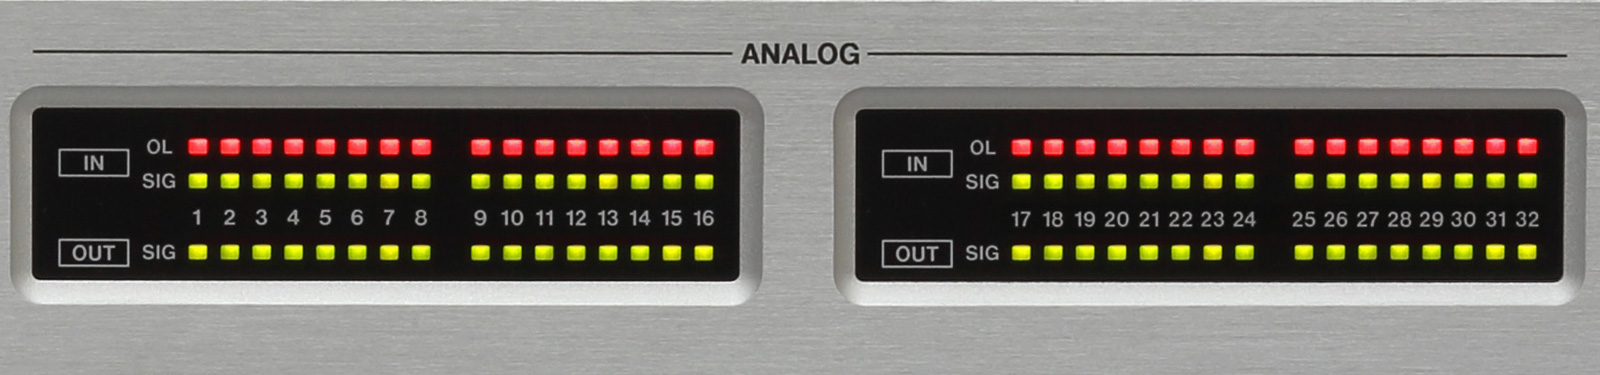 アナログ入出力信号のレベル監視が可能なシグナル/オーバーロード・インジケーター搭載